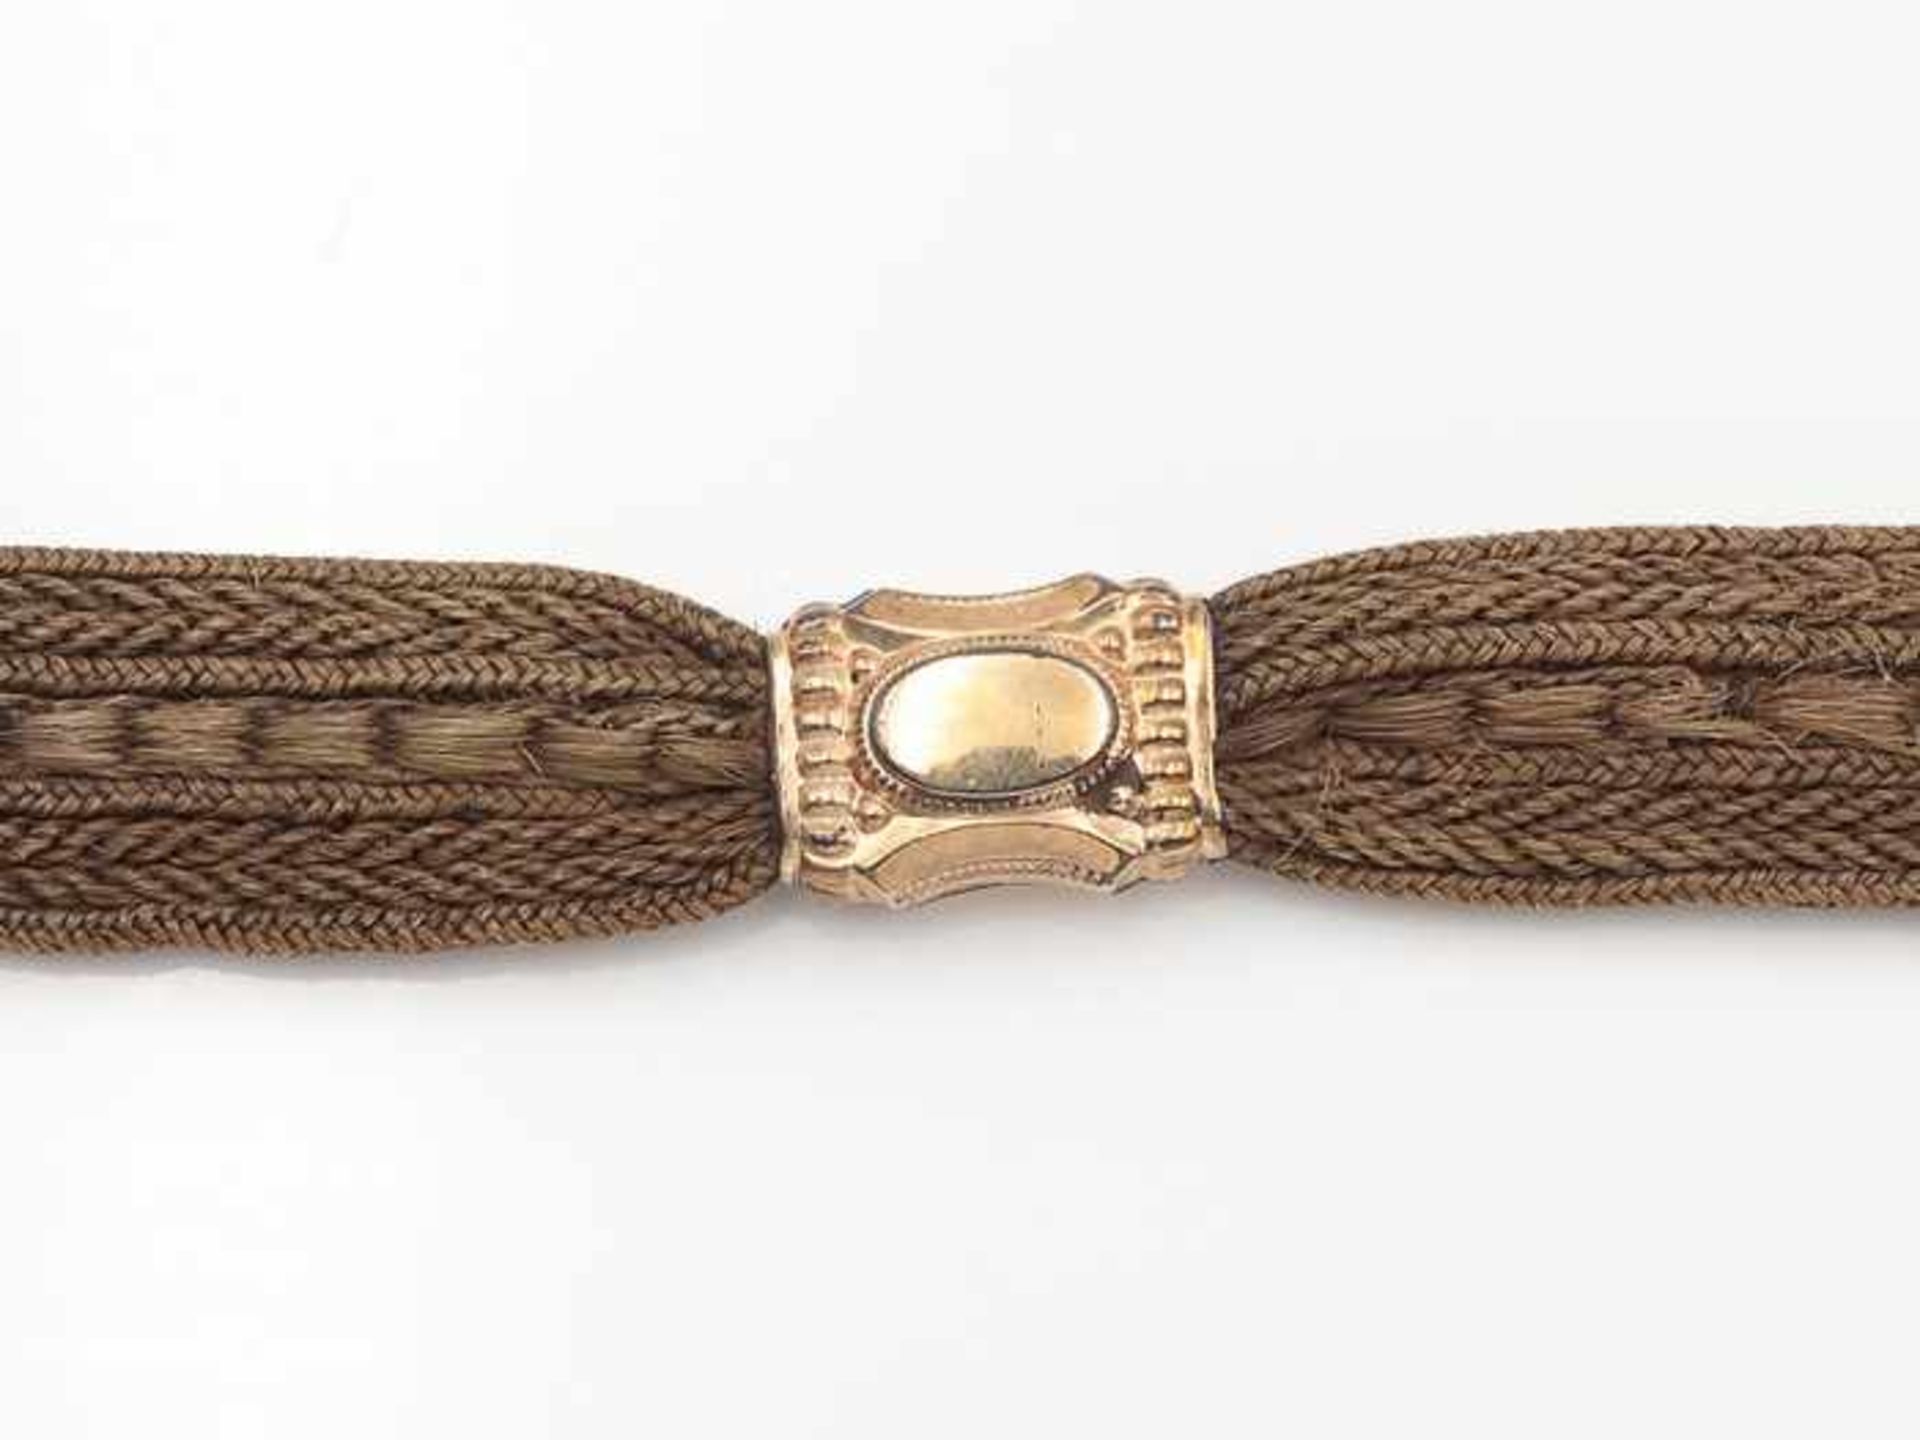 UhrenketteBiedermeier, aus geflochtenen Haaren mit Zierelementen - Hirschkopf u.a. - aus Schaumgold, - Bild 3 aus 3